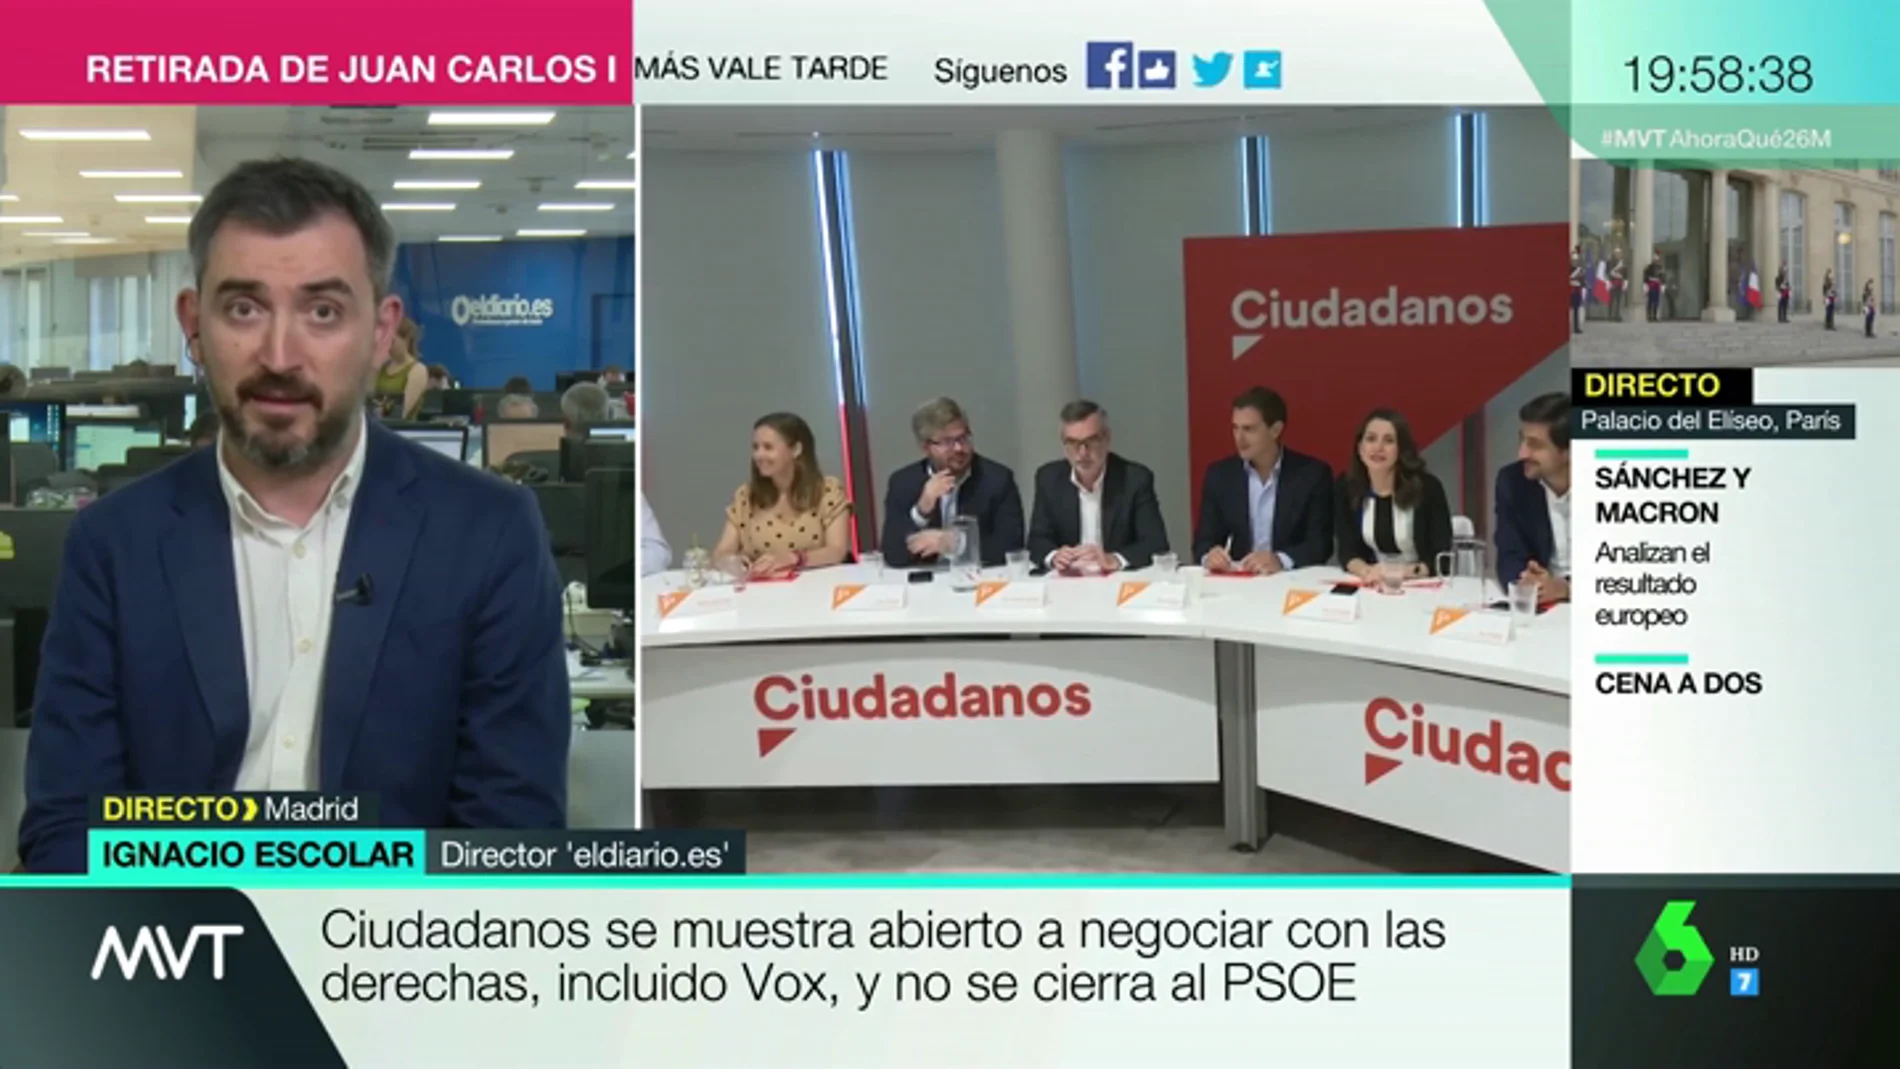 Ignacio Escolar, sobre los posibles pactos entre Ciudadanos y PSOE: "Le mancha Vox y ser socio de la extrema derecha en administraciones"